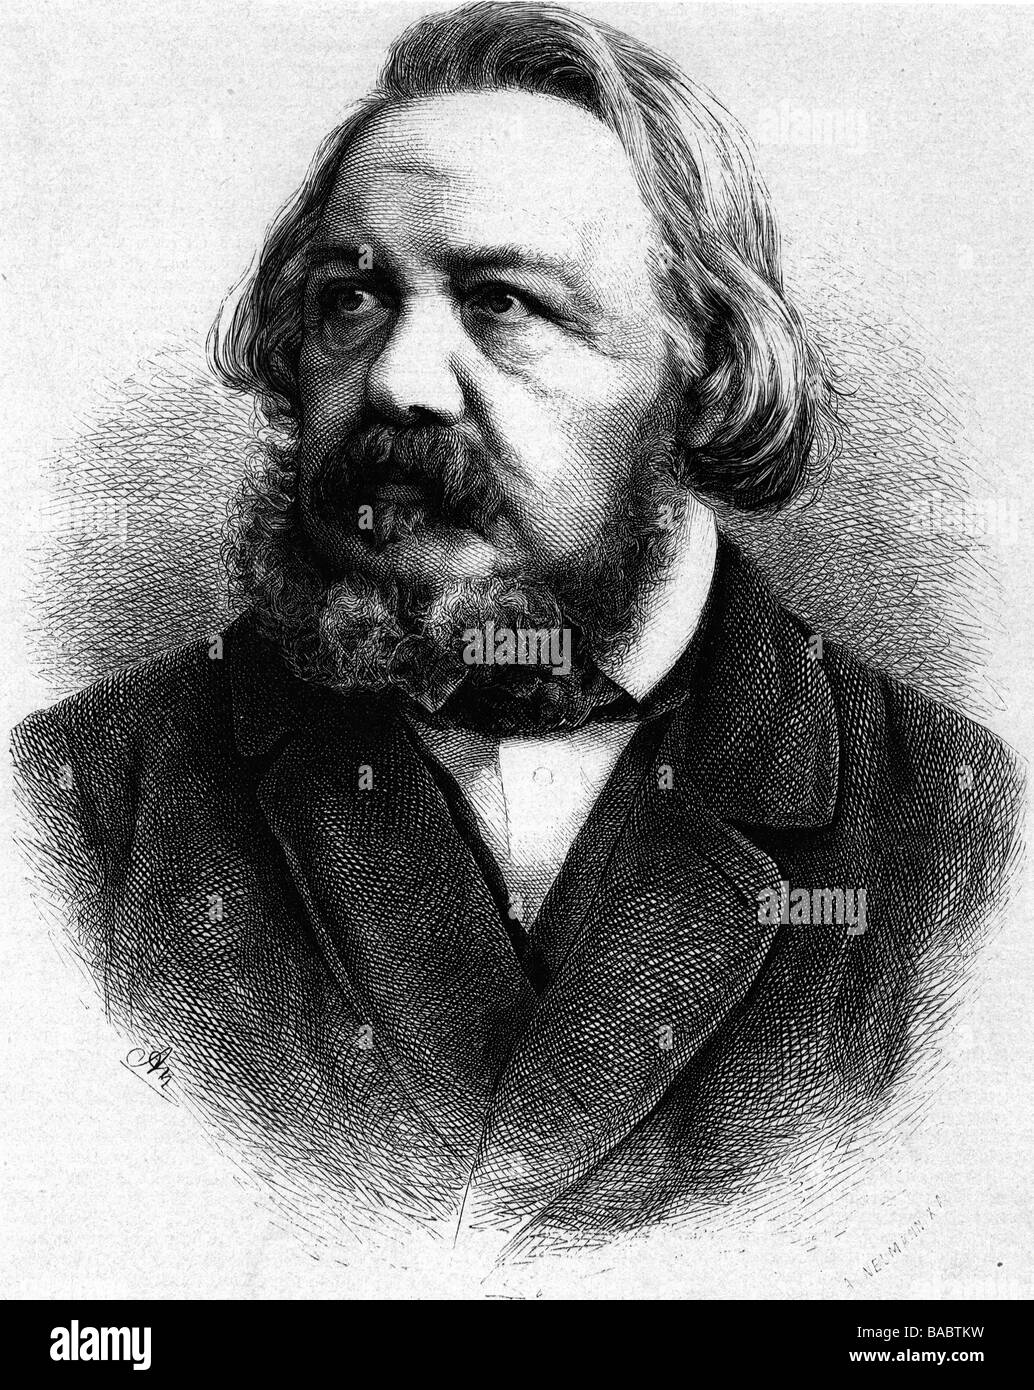 Freiligrath, Ferdinand, 17.6 1810 - 18.3.1876, German poet, portrait, wood engraving by Adolf Neumann (1825 - 1884), after photo by Buchner, 19th century, Stock Photo